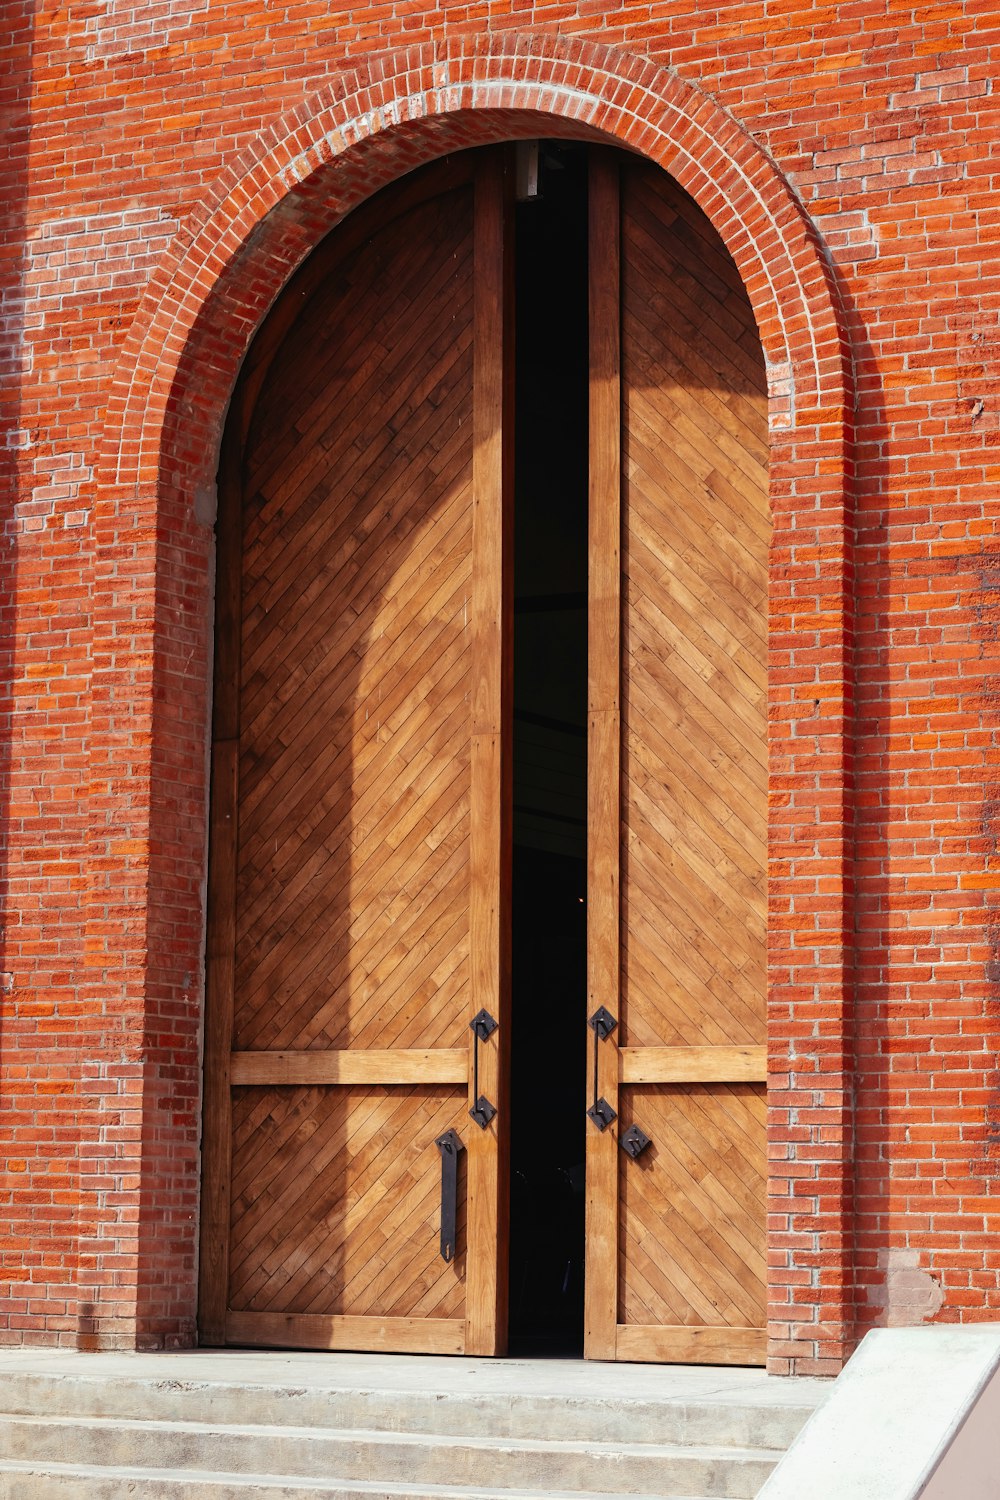 a large wooden door